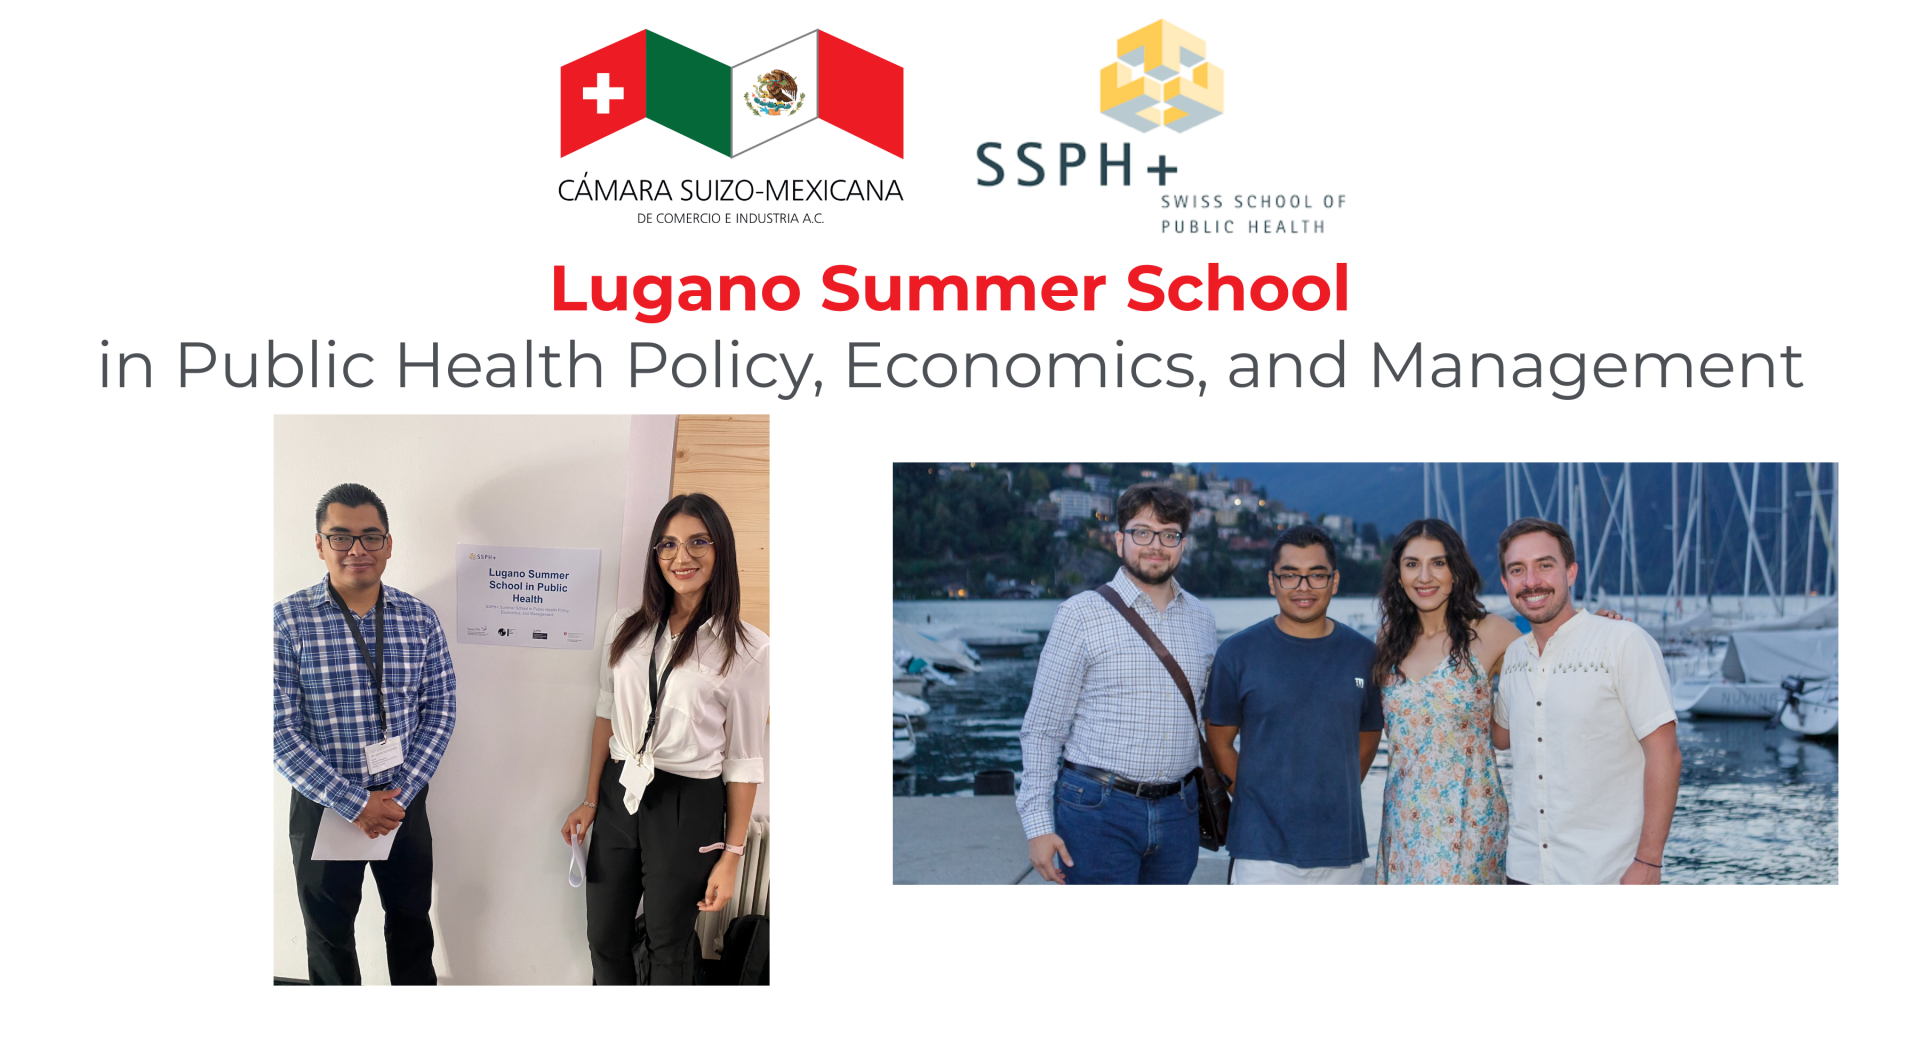 Lugano Summer School on Public Health